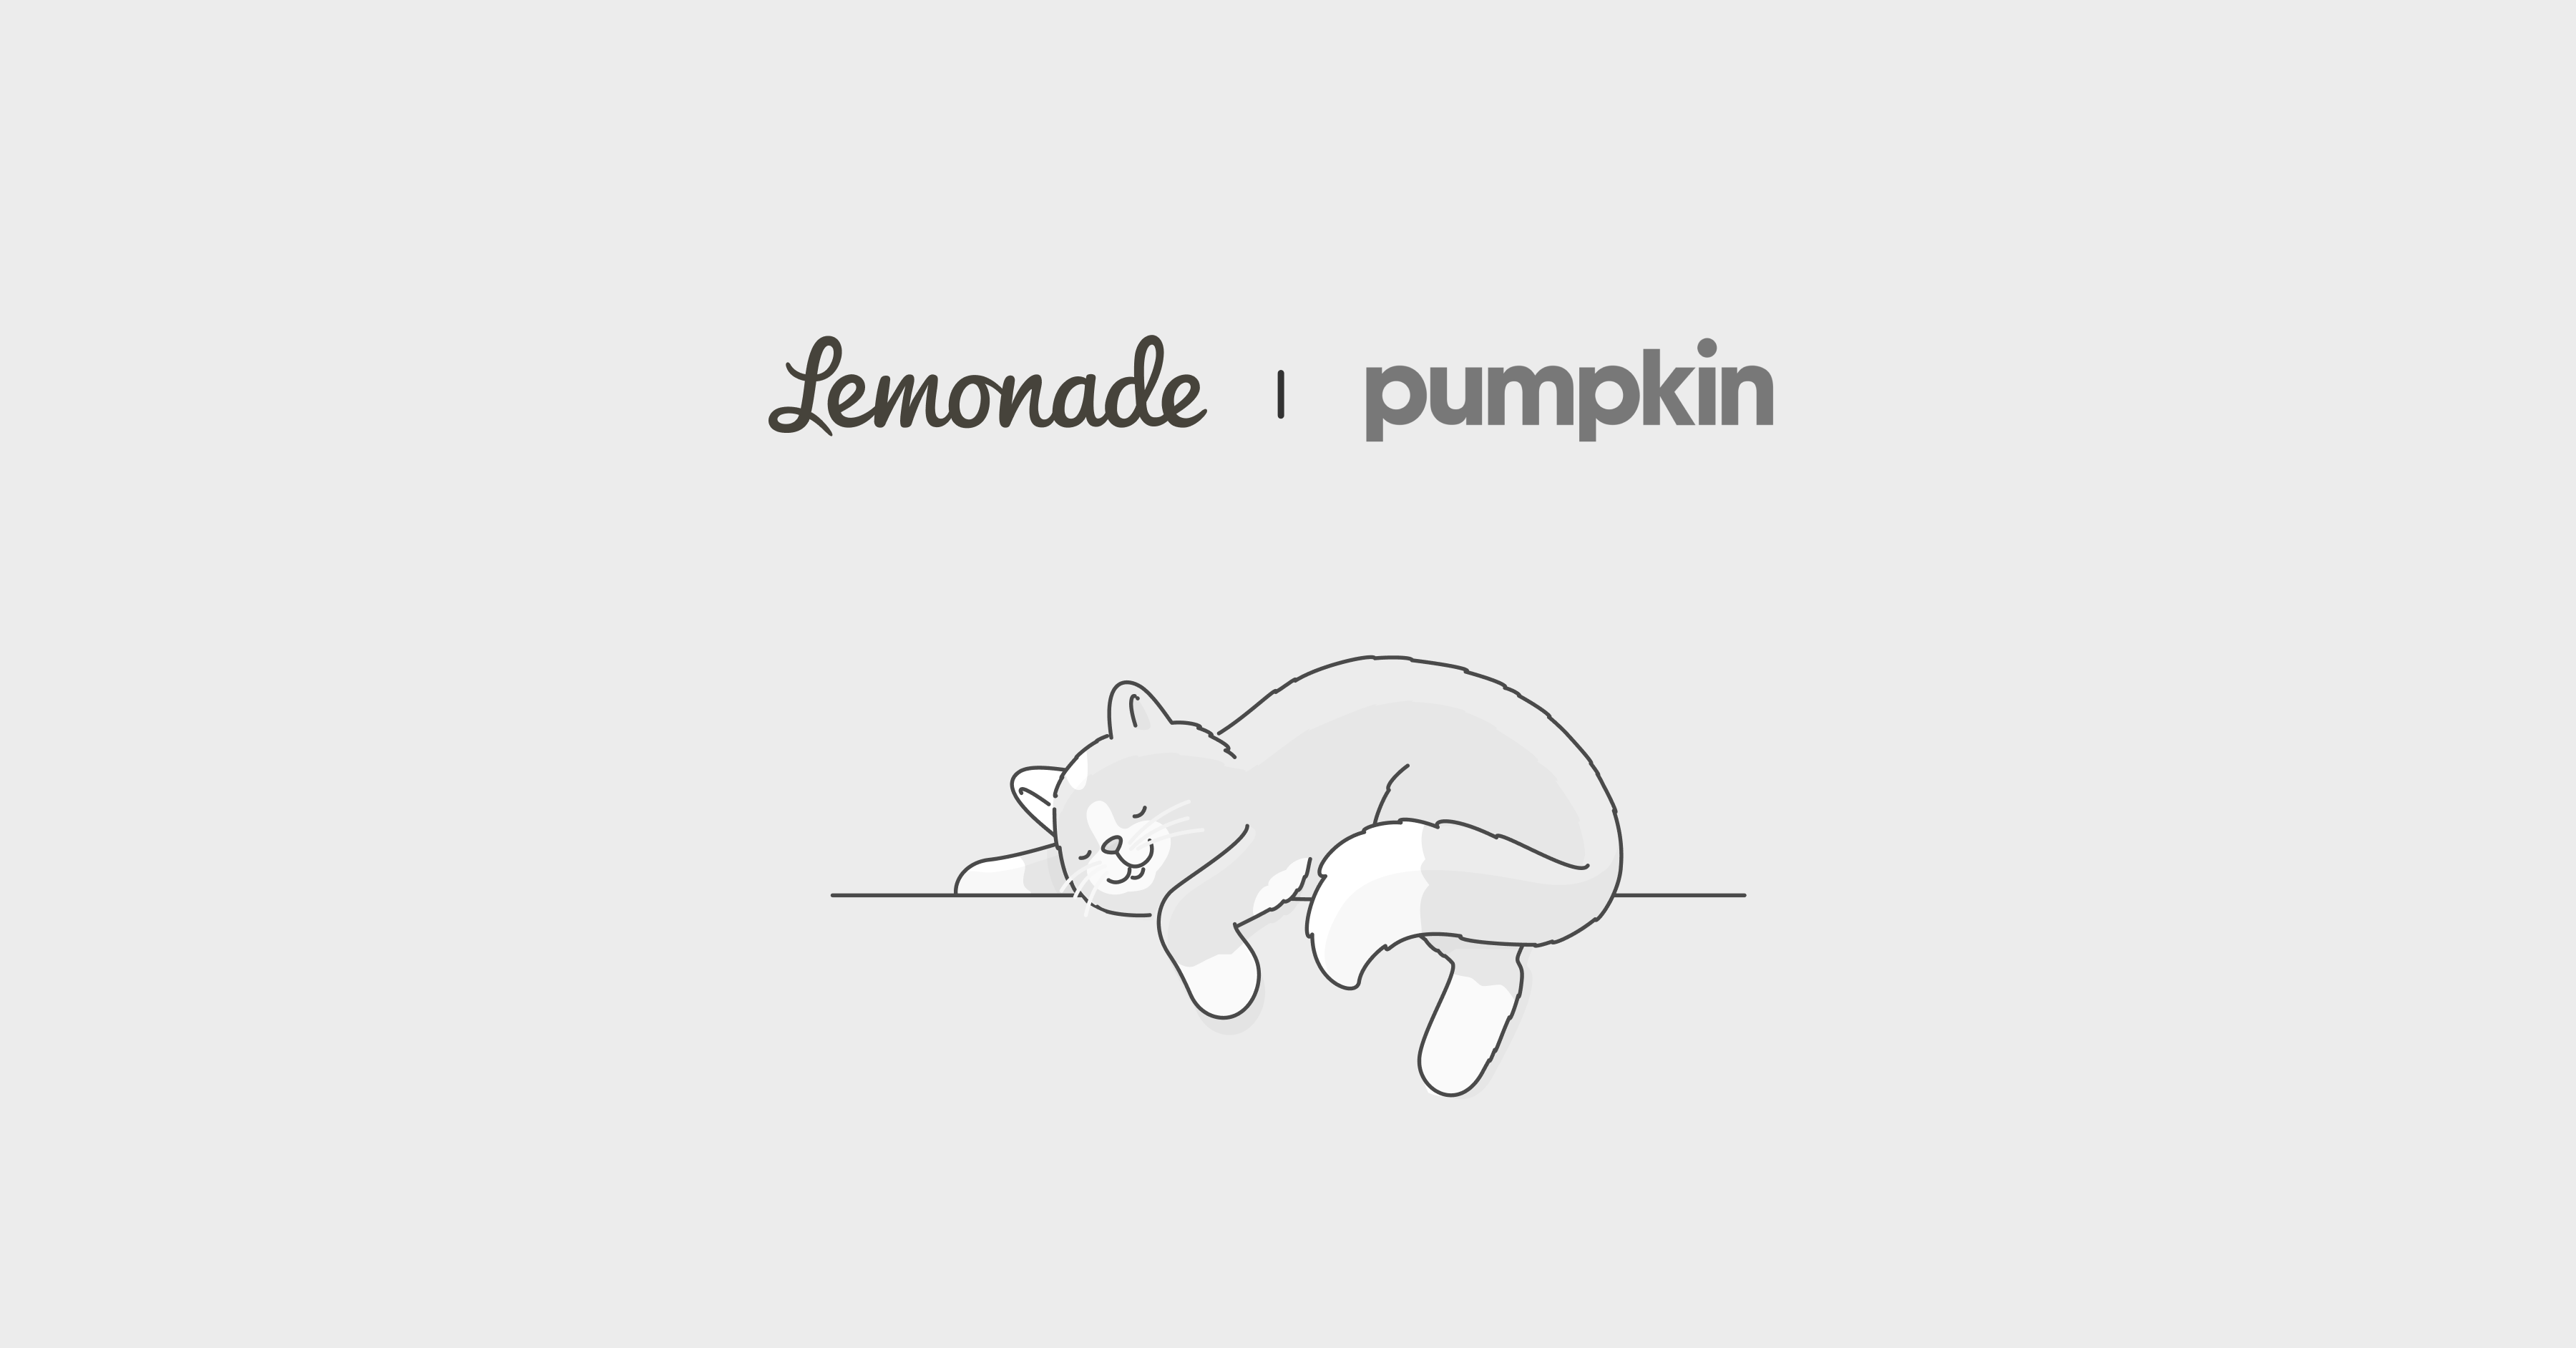 Pumpkin pet insurance vs. Lemonade Comparison